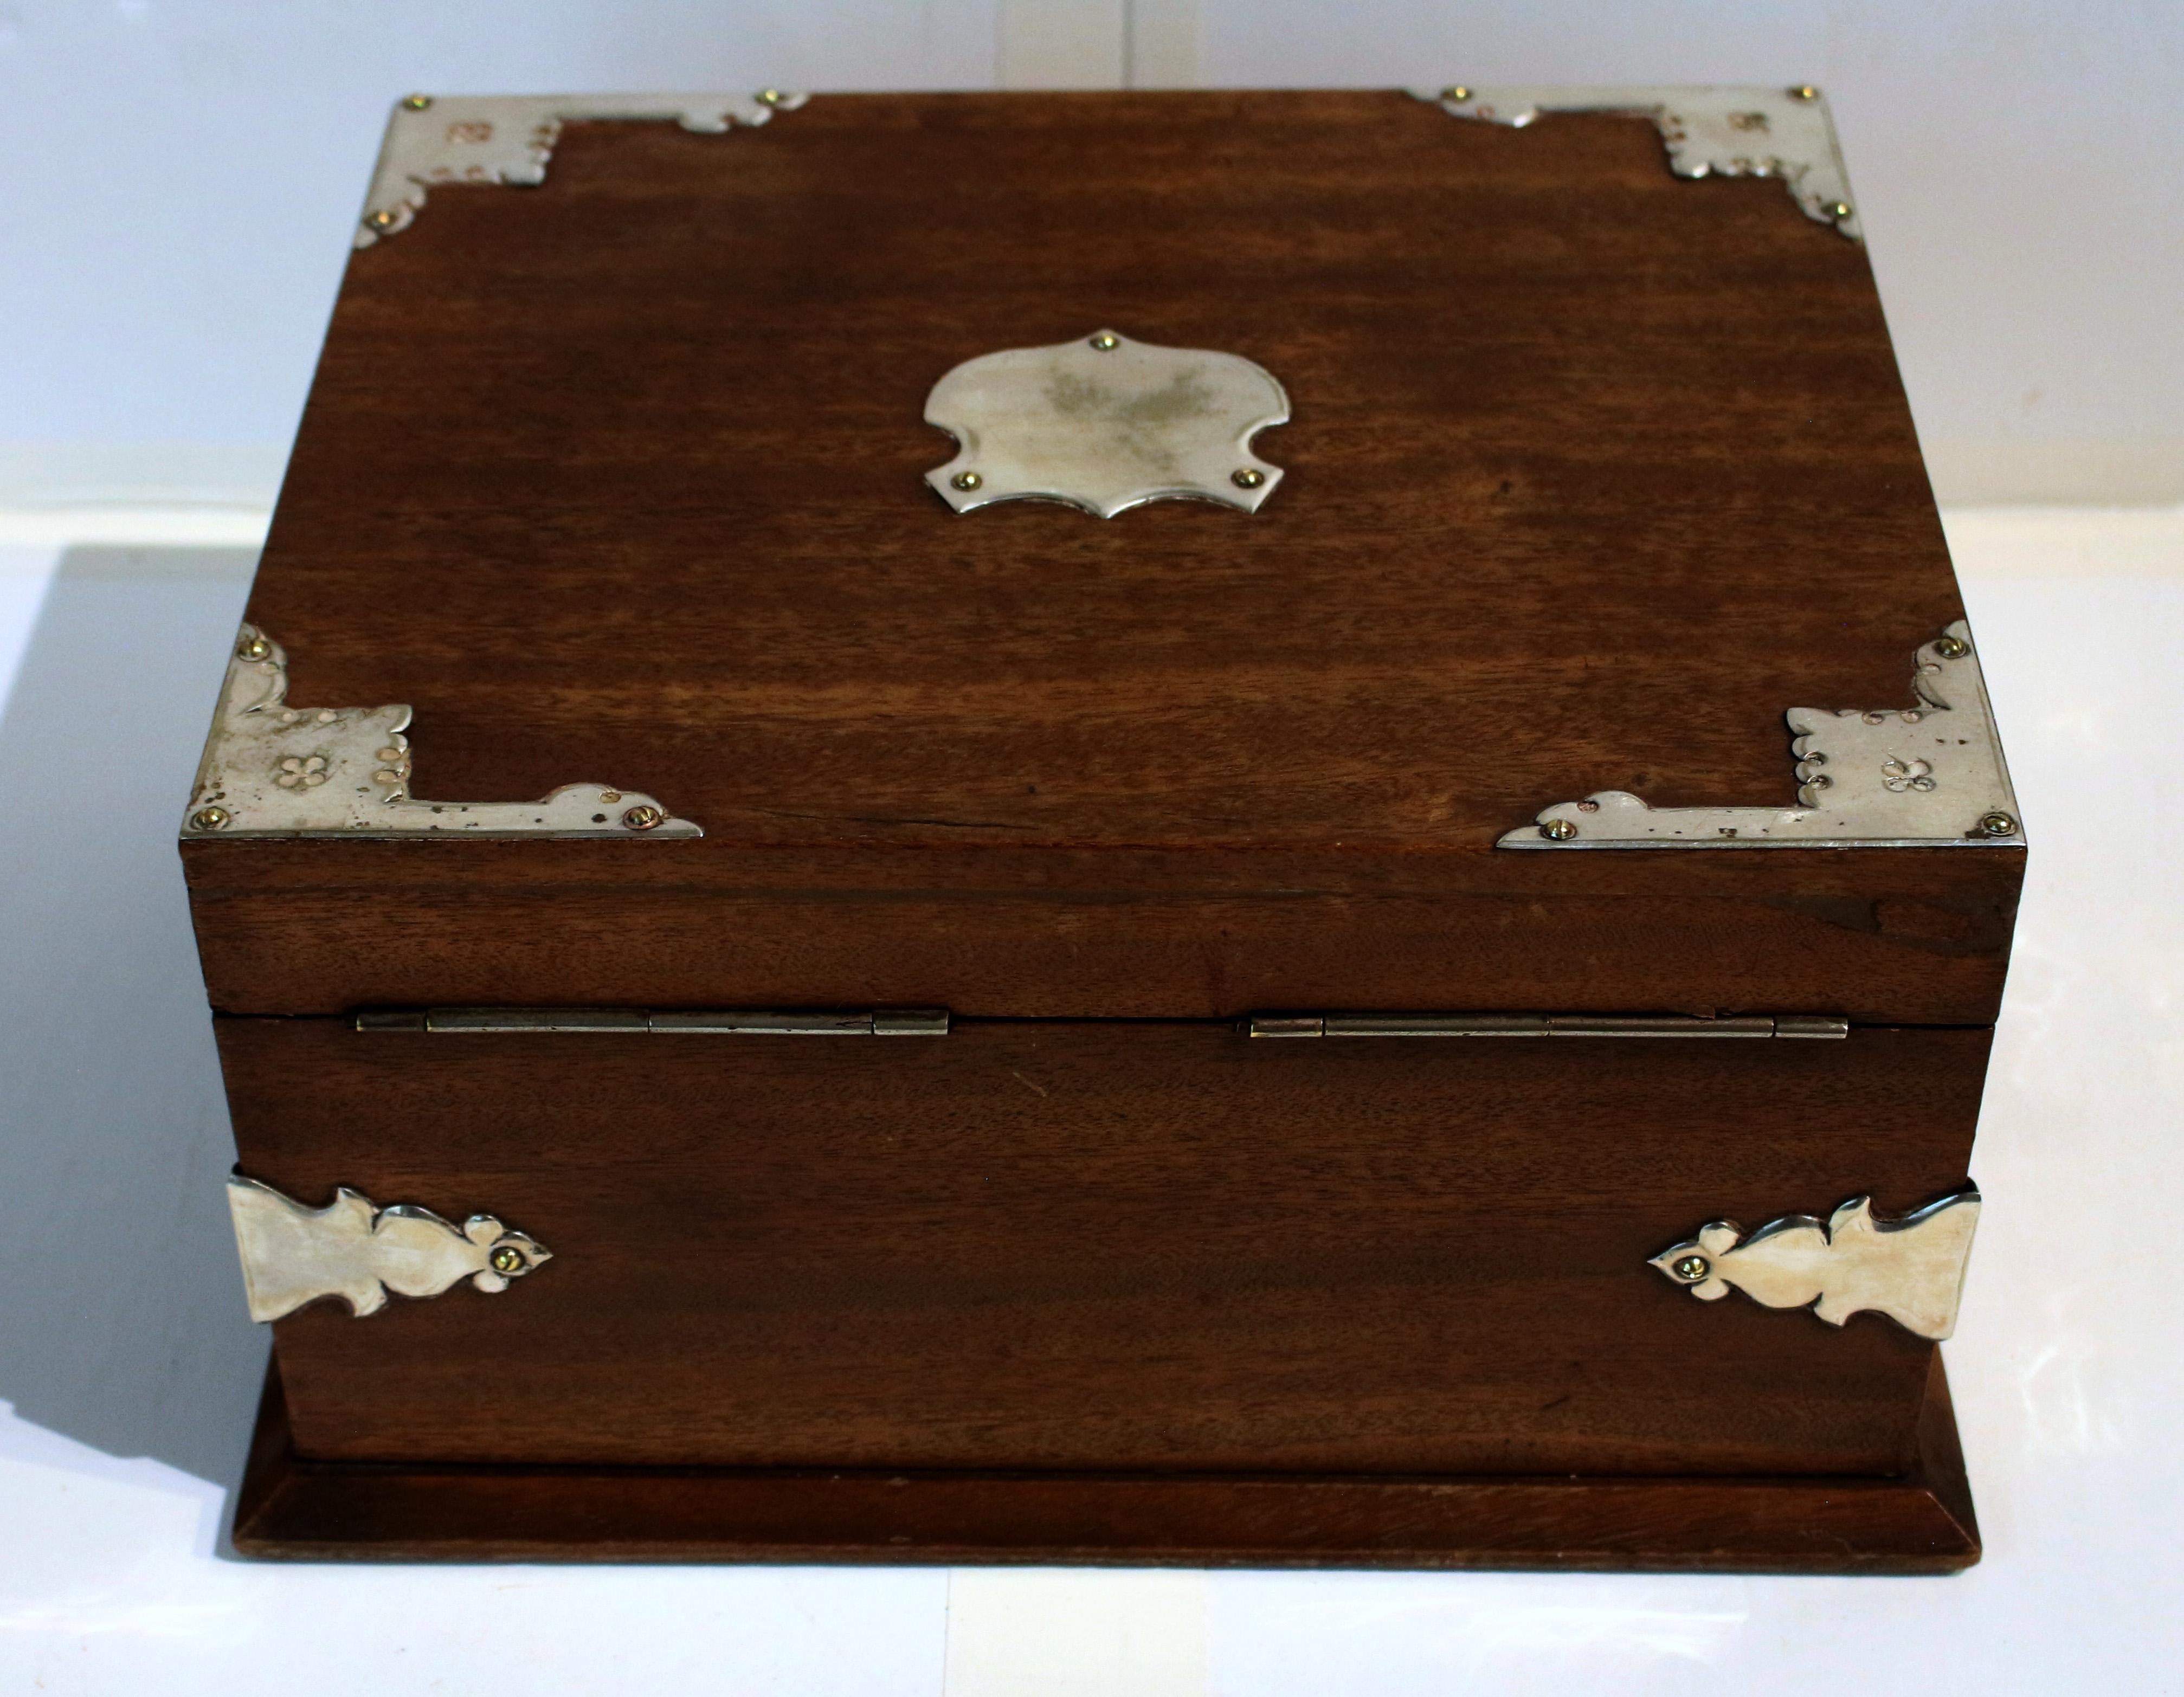 Circa 1870s Silverplate and Mahogany Humidor Box 3